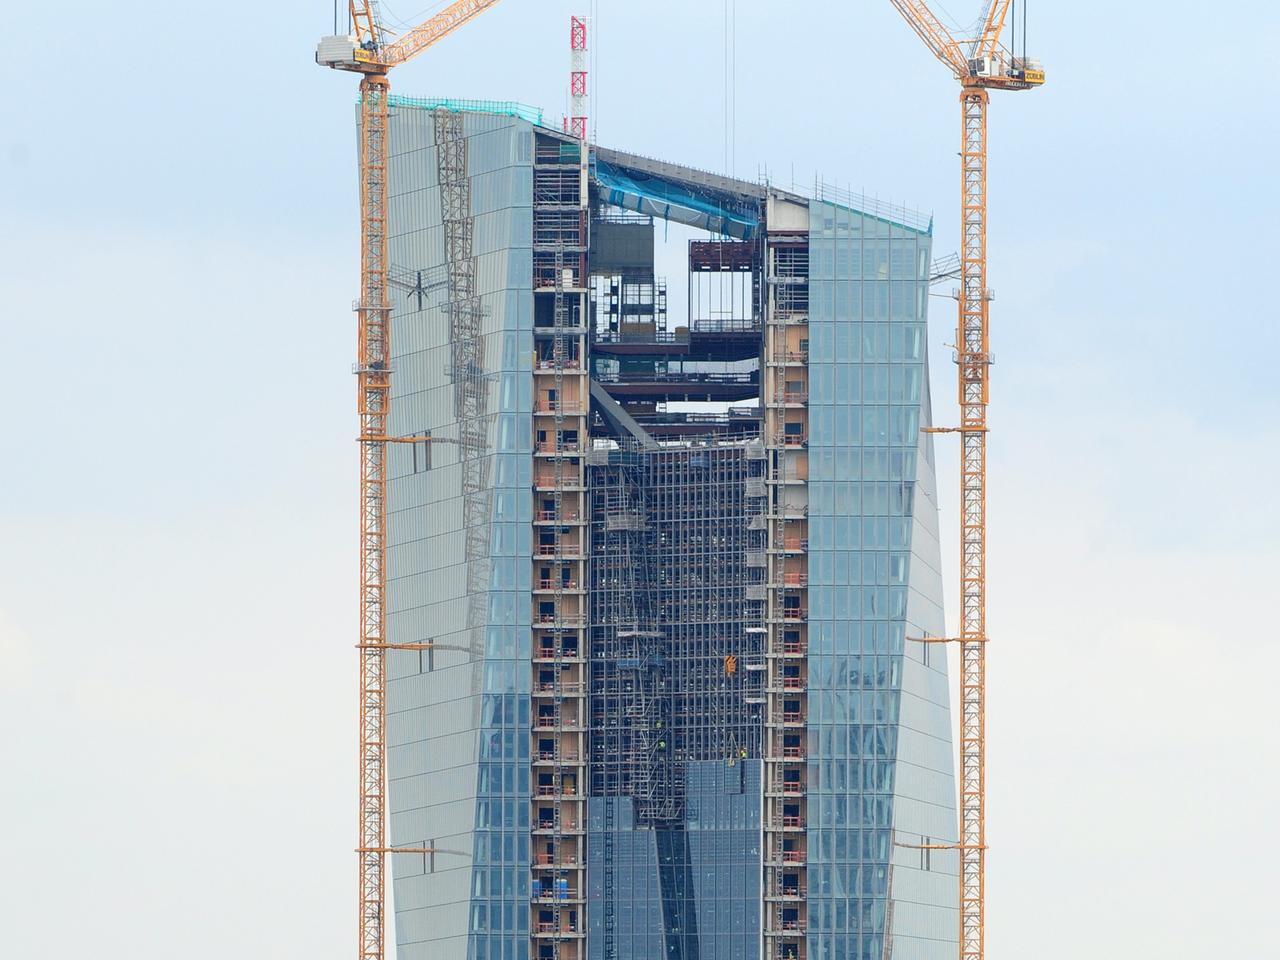 Neubau der Europäischen Zentralbank in Frankfurt am Main 27.8.13